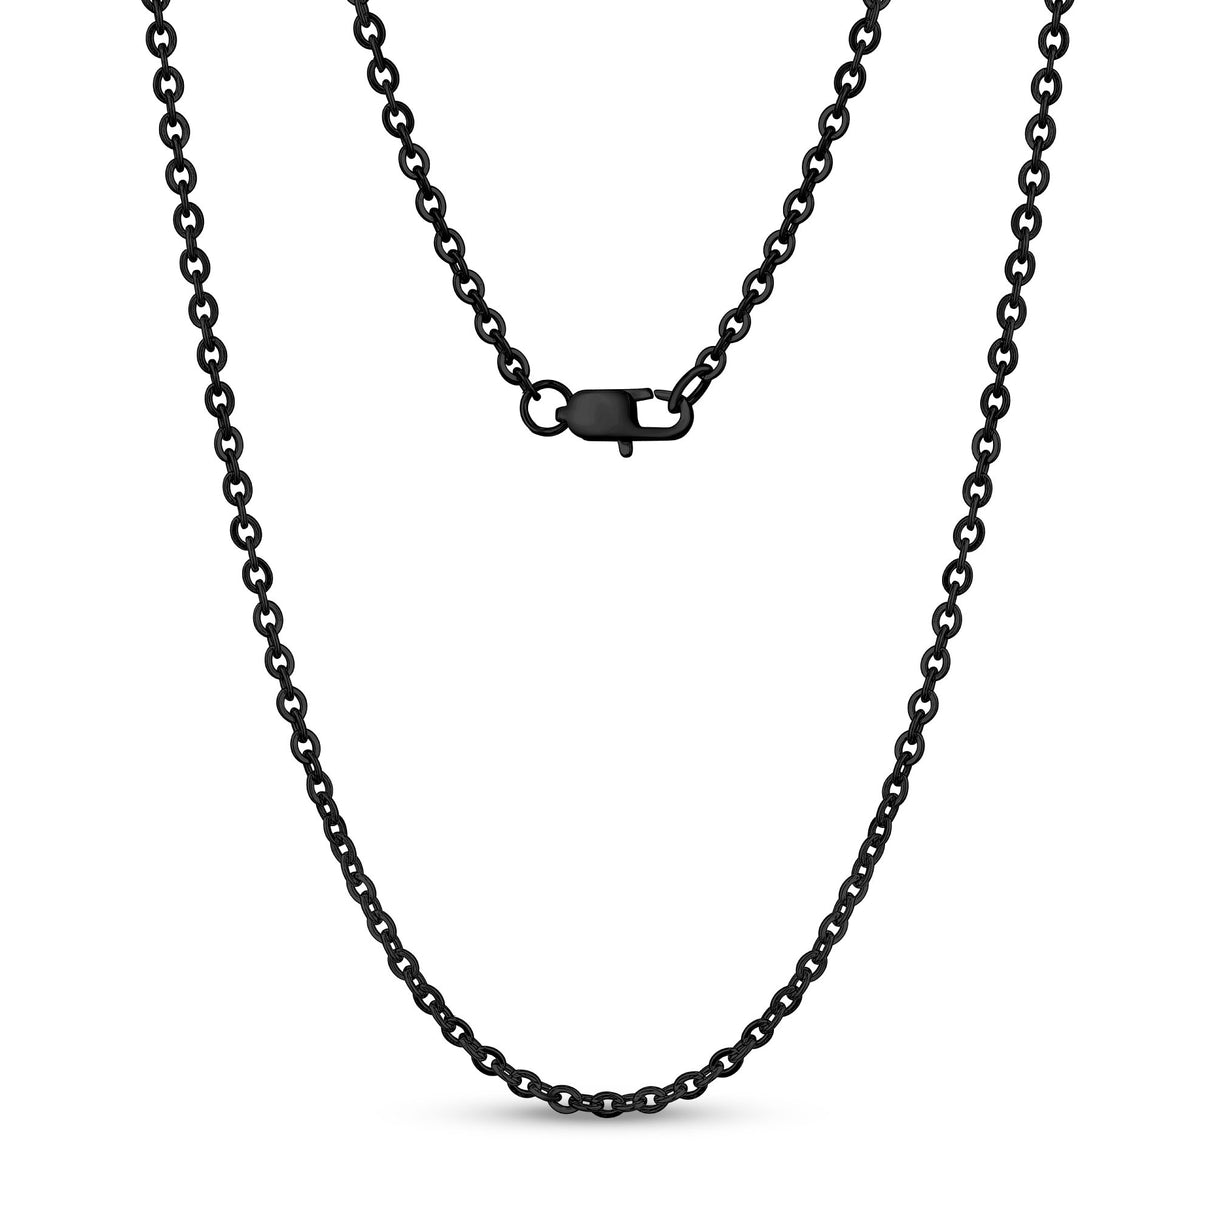 男女通用项链 - 3毫米扁锚椭圆链接黑钢链项链